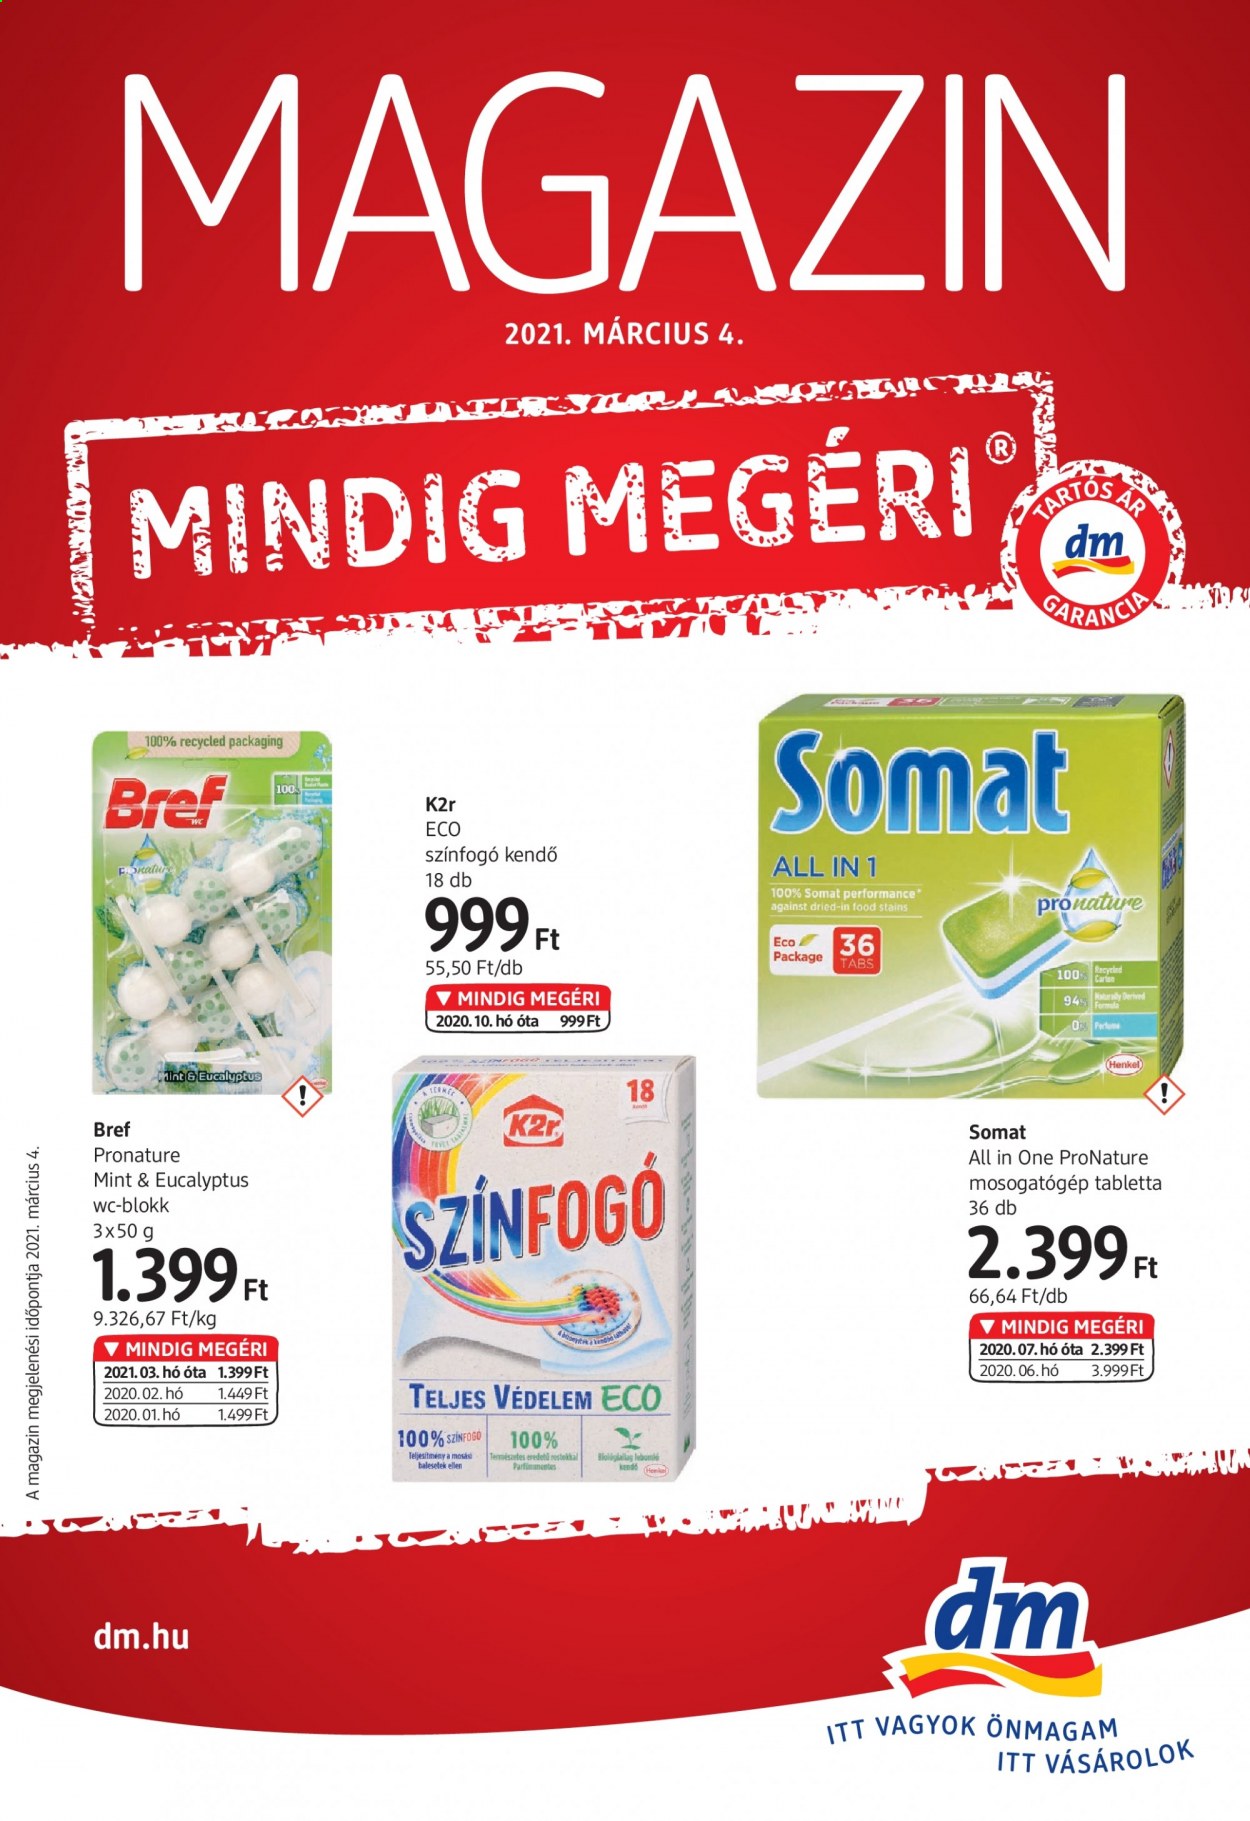 thumbnail - dm drogerie markt akciós újsága  - Akciós termékek - Henkel, Bref, wc-blokk, K2r, színfogó kendö, Somat, mosogatógép tabletta.  1. Oldal